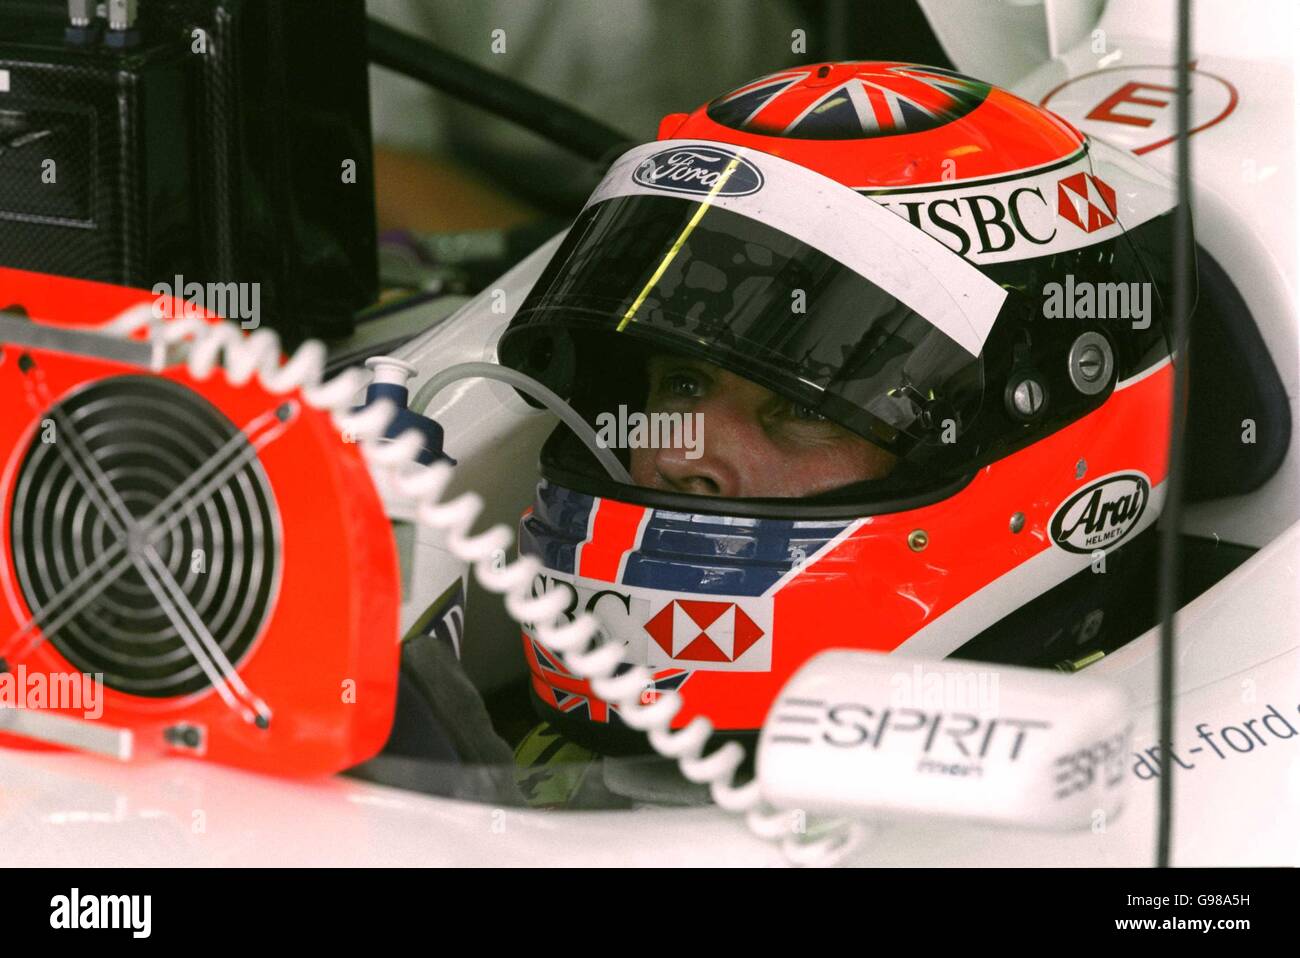 Carreras de Fórmula Uno - Gran Premio de Malasia - Clasificación. Johnny Herbert se mantiene fresco con dos fans en su coche beffor fijar 5th el tiempo más rápido en la calificación Foto de stock